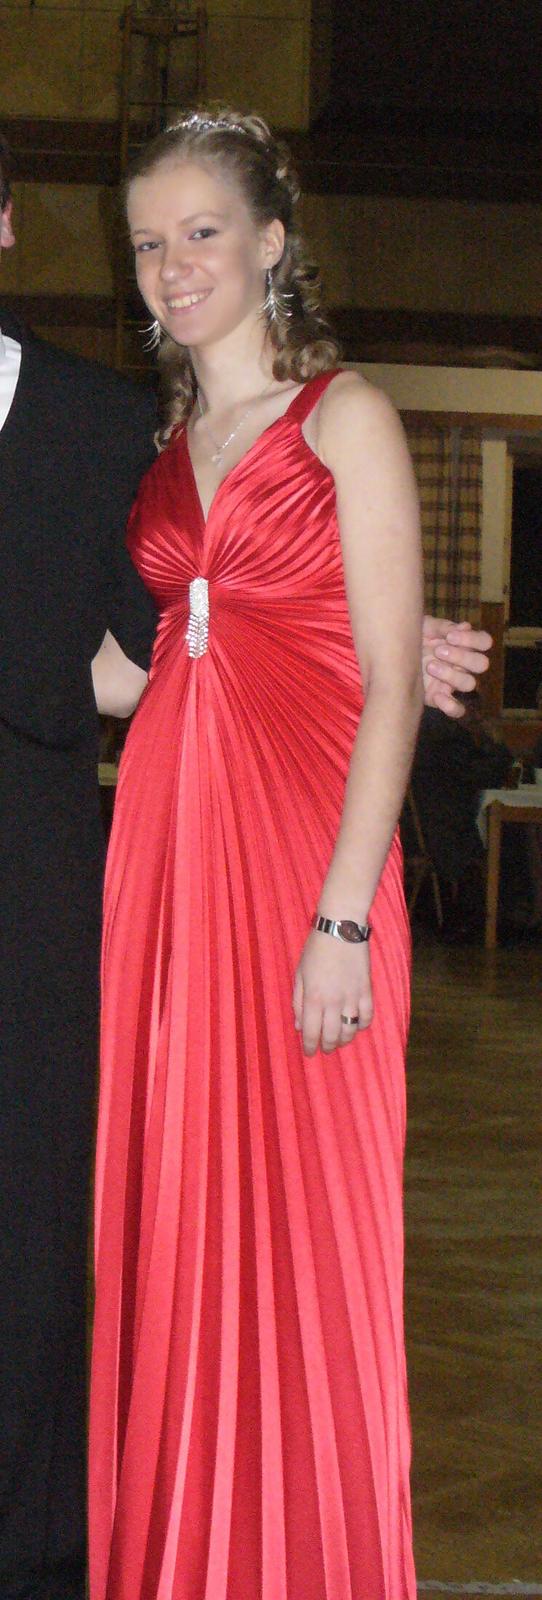 Červené plisové plesové šaty s odnímatelnou broží - Obrázek č. 1